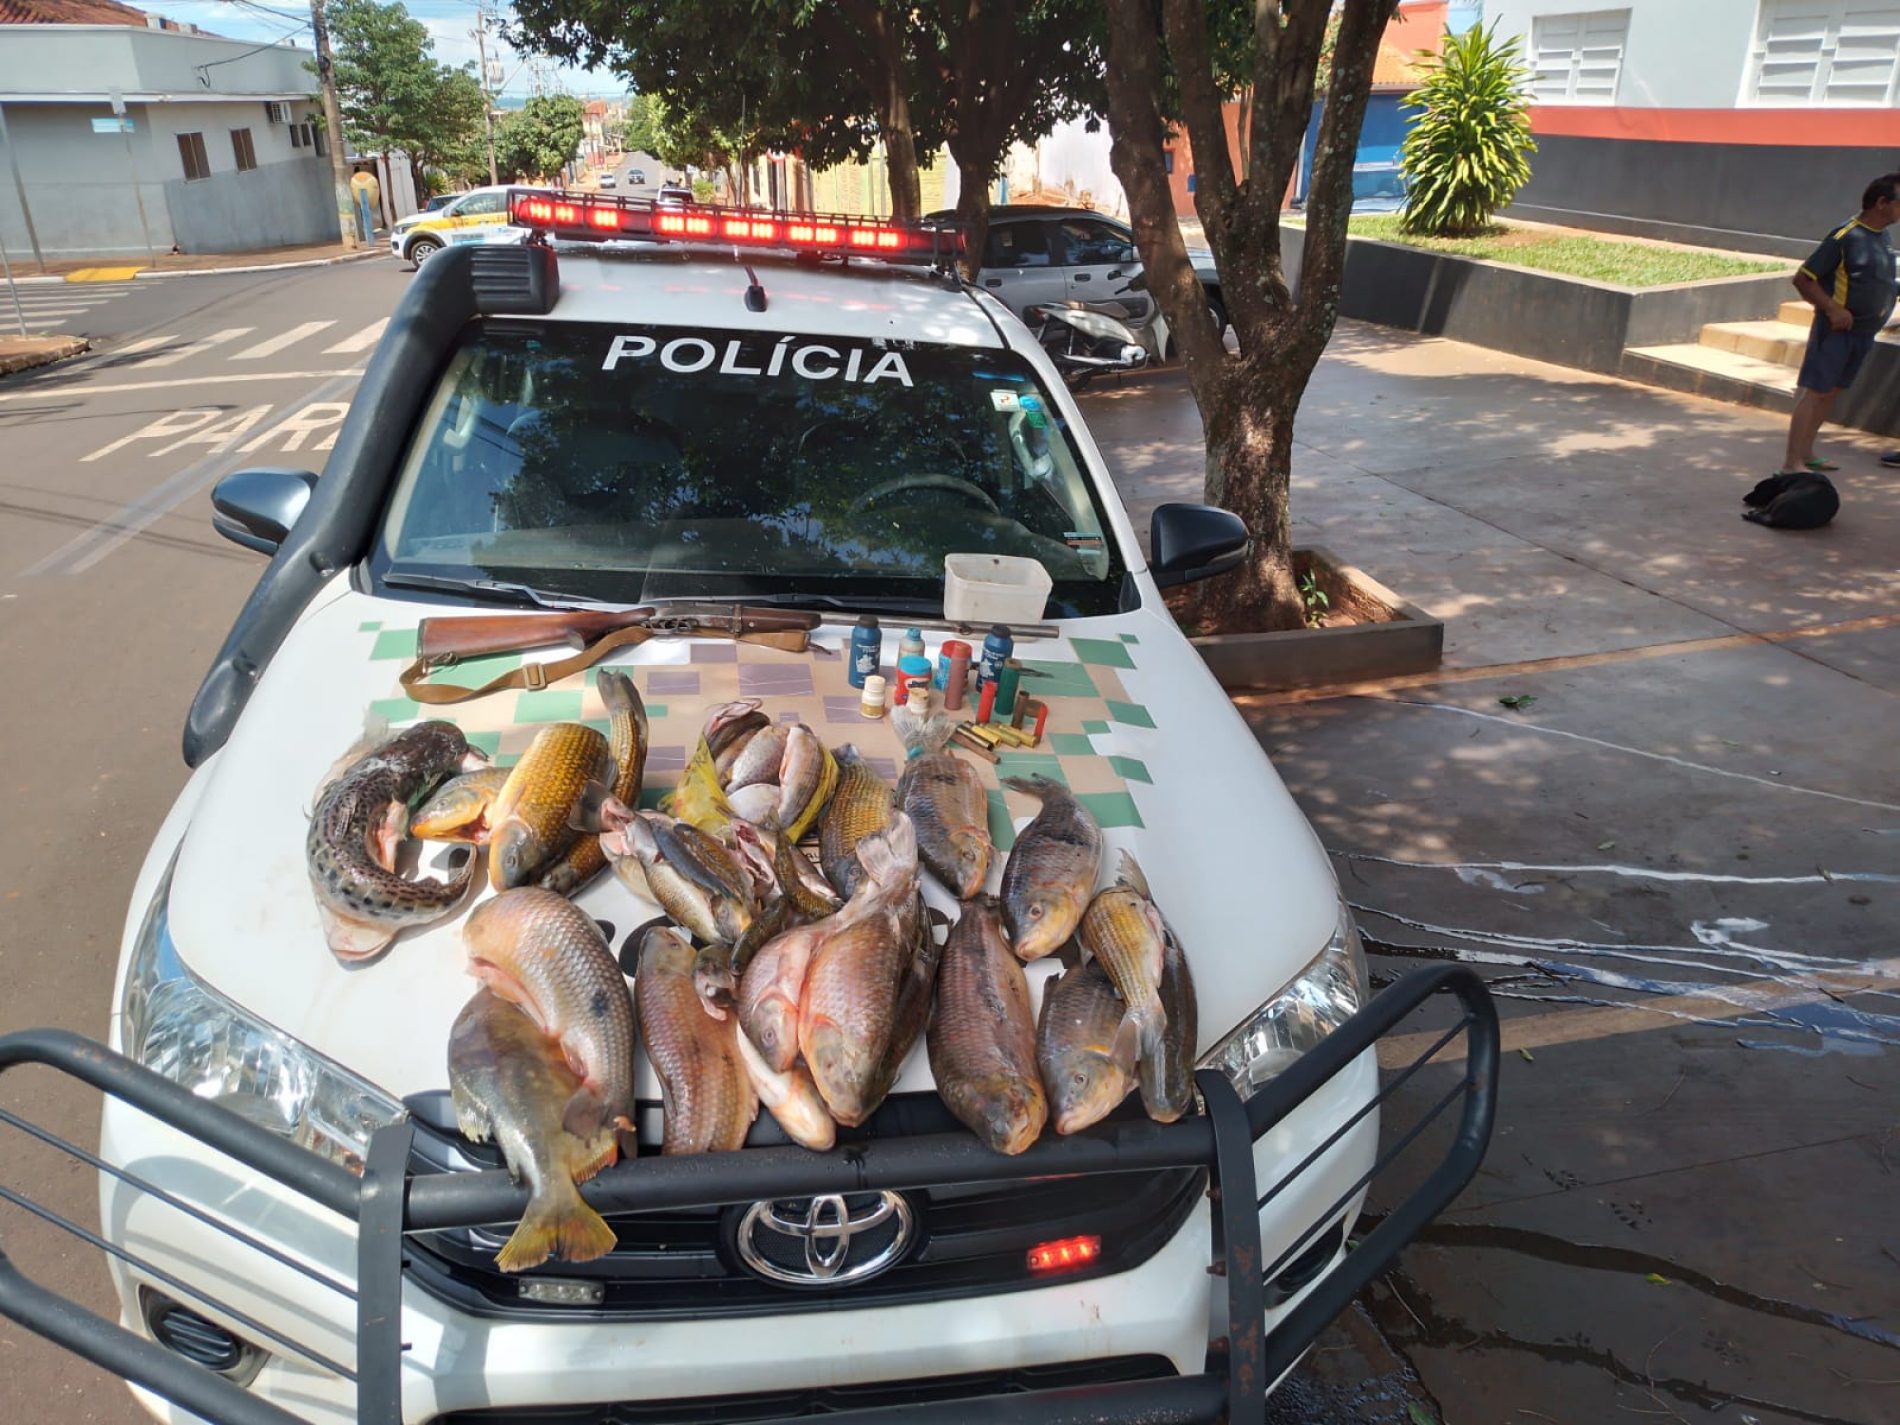 COLOMBIA :Homem é preso pescando no Rio Grande e polícia aprende peixes, arma e diversos outros objetos